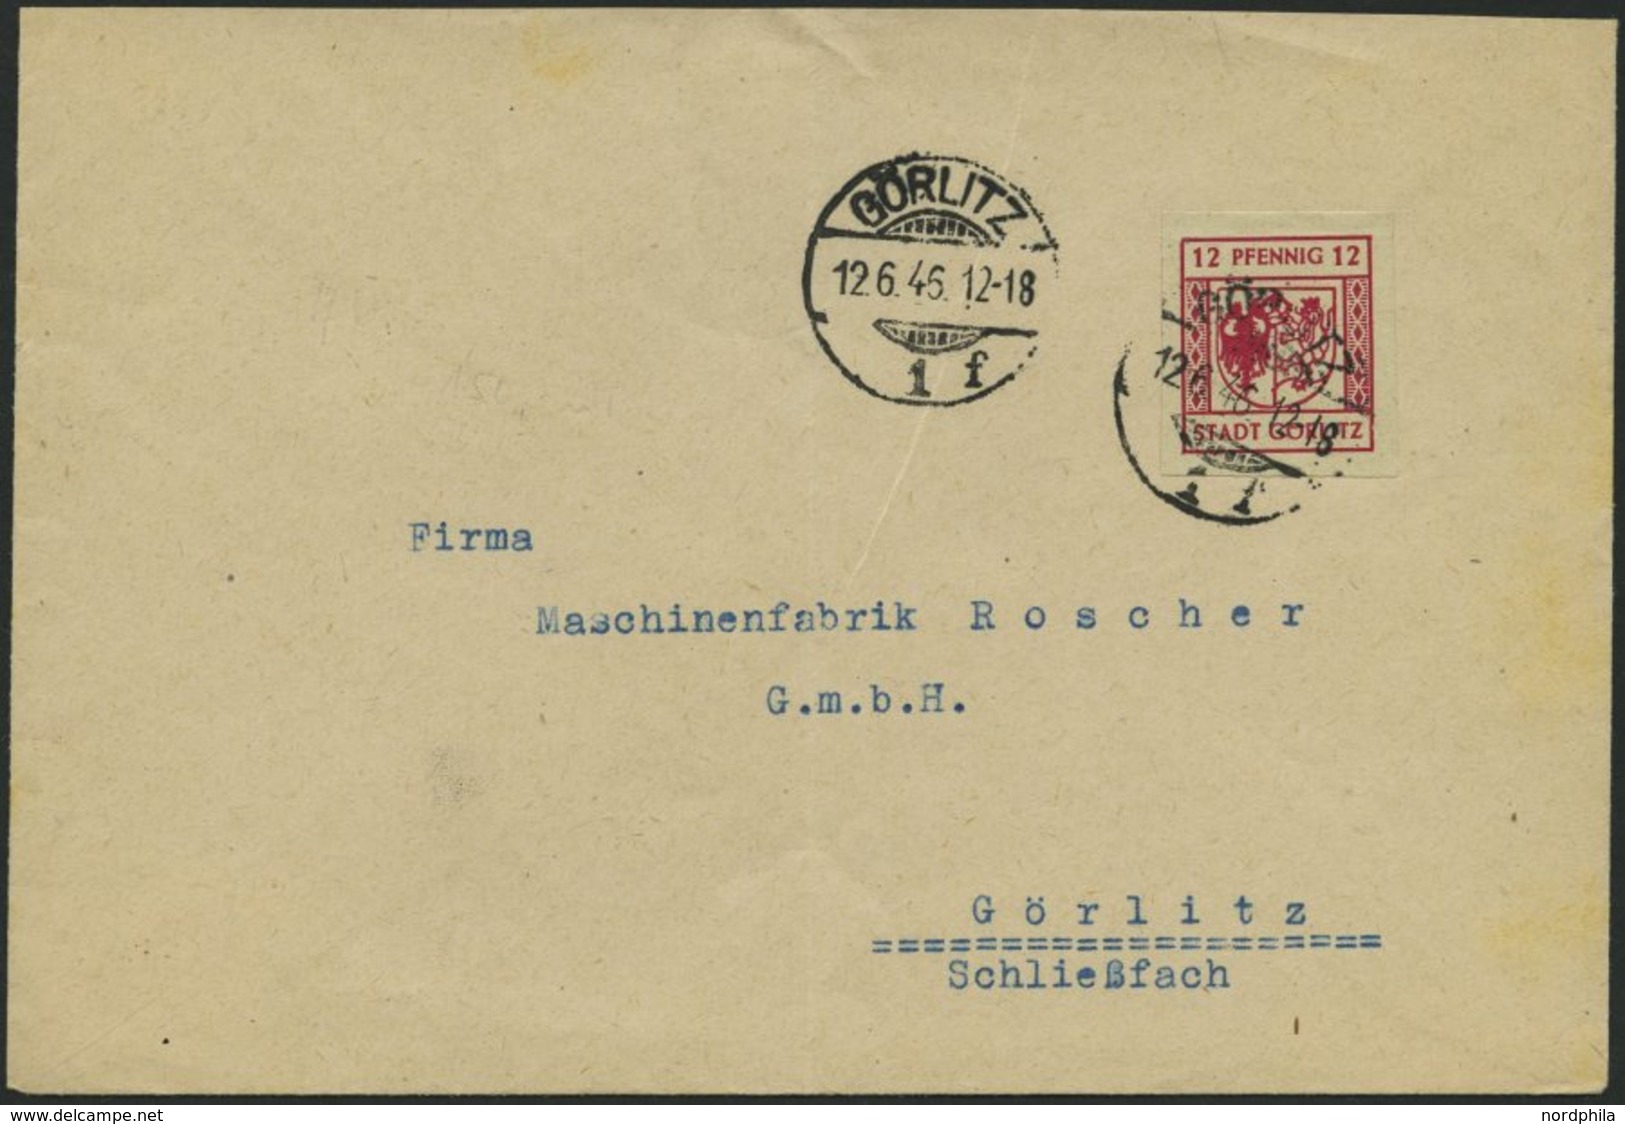 GÖRLITZ 4aU BRIEF, 1946, 12 Pf. Lilarot, Graues Papier, Ungezähnt, Prachtbrief - Private & Lokale Post